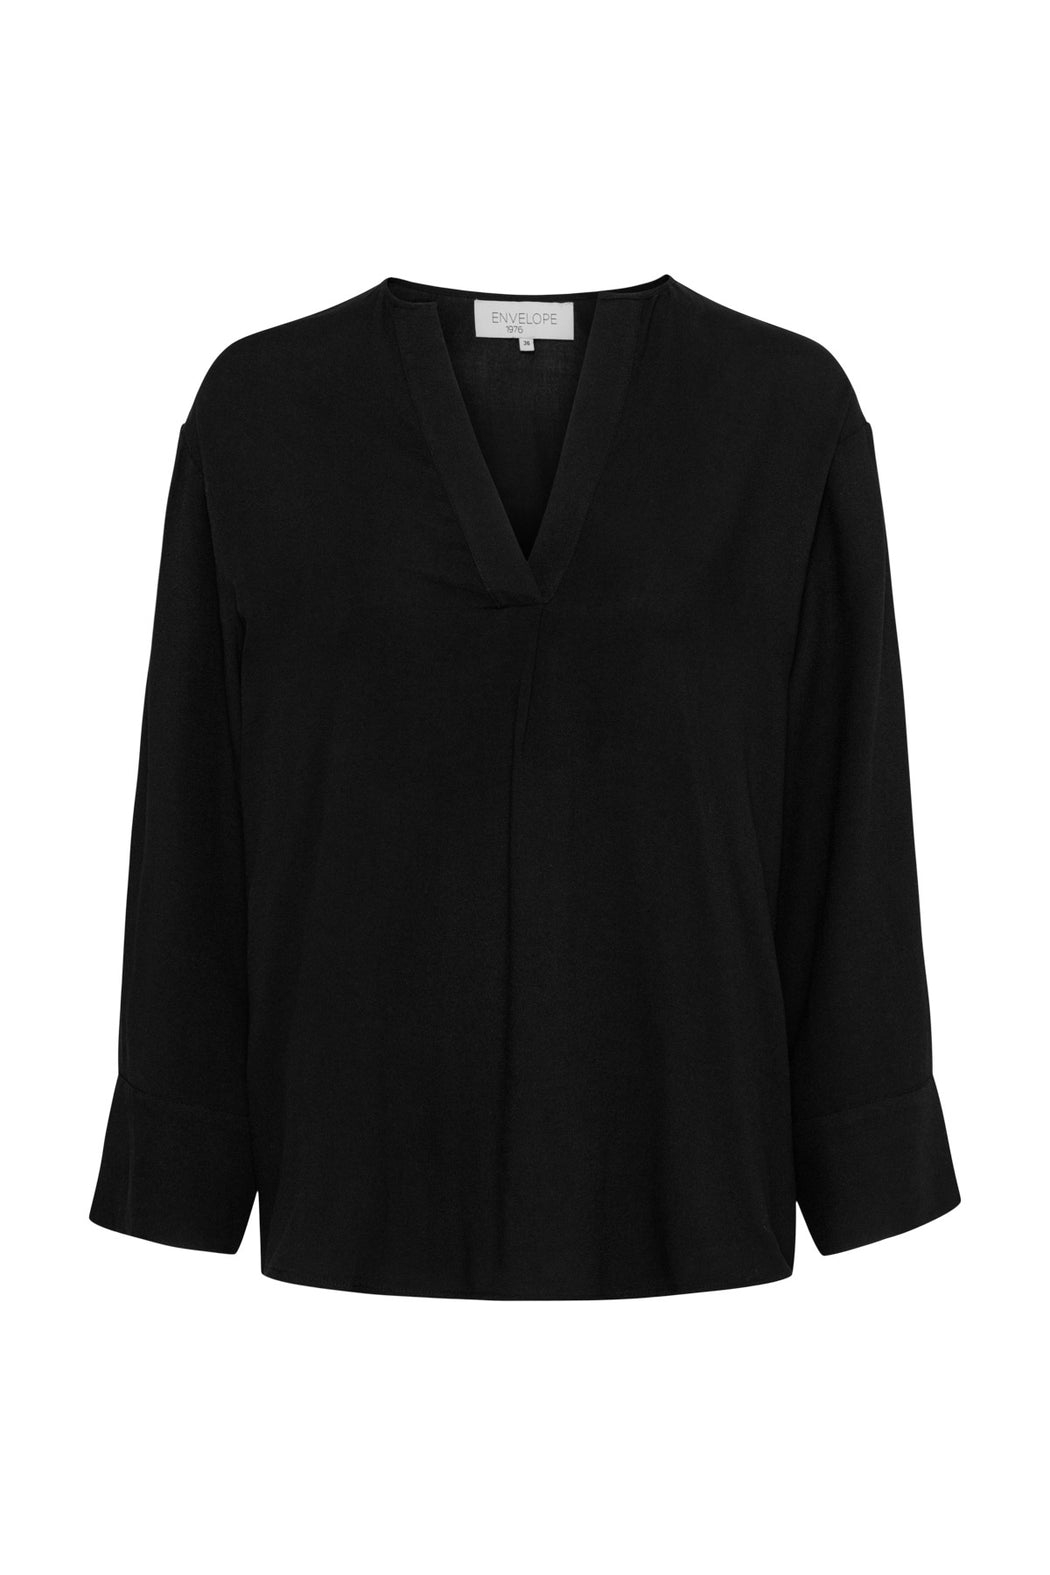 Envelope1976 Cascais blouse - Viscose Blouse Black